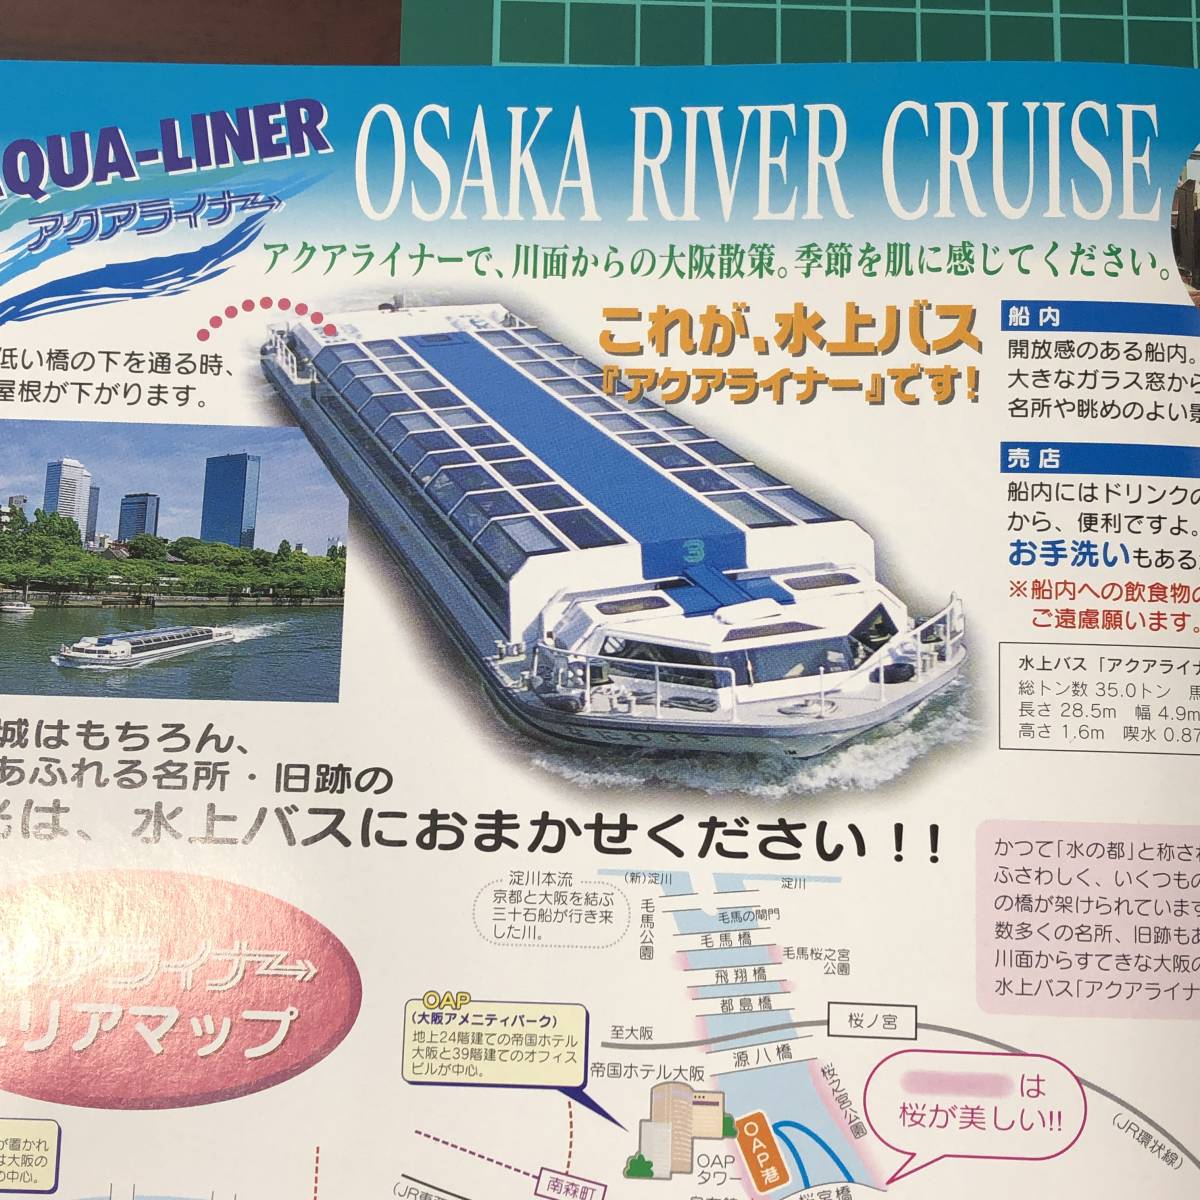  aqua подкладка Osaka водный автобус OSAKA RIVER CRUISE..2007 год примерно каталог проспект [F0414]